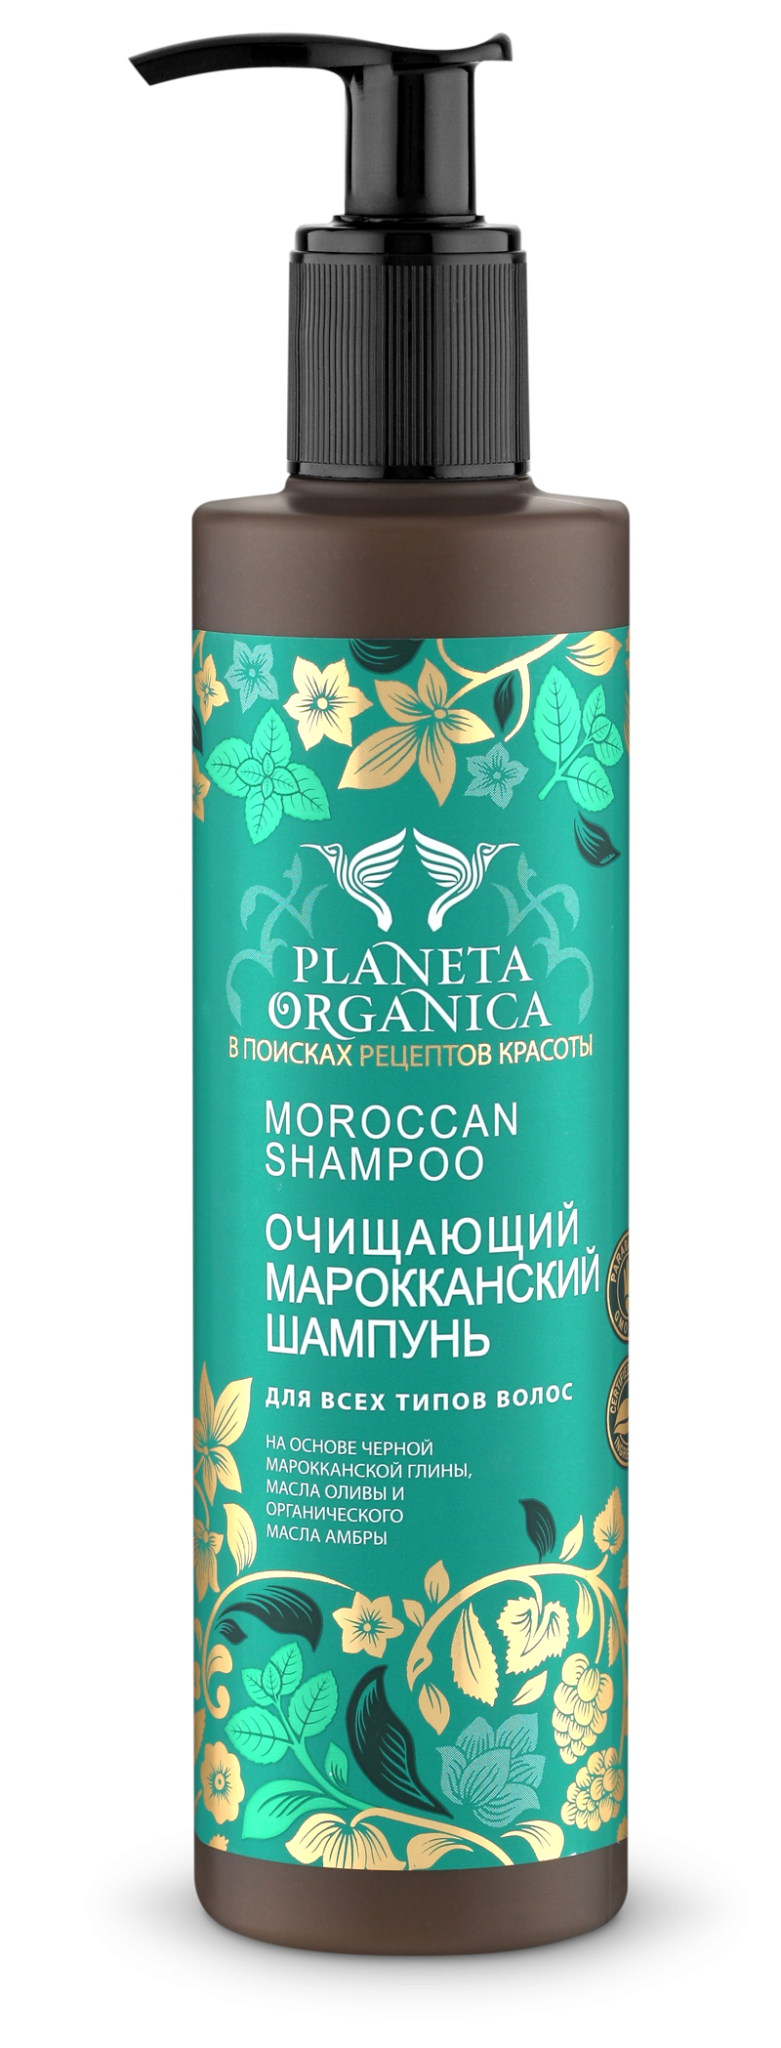 Средства для волос: Шампунь Planeta Organica «Марокканский»